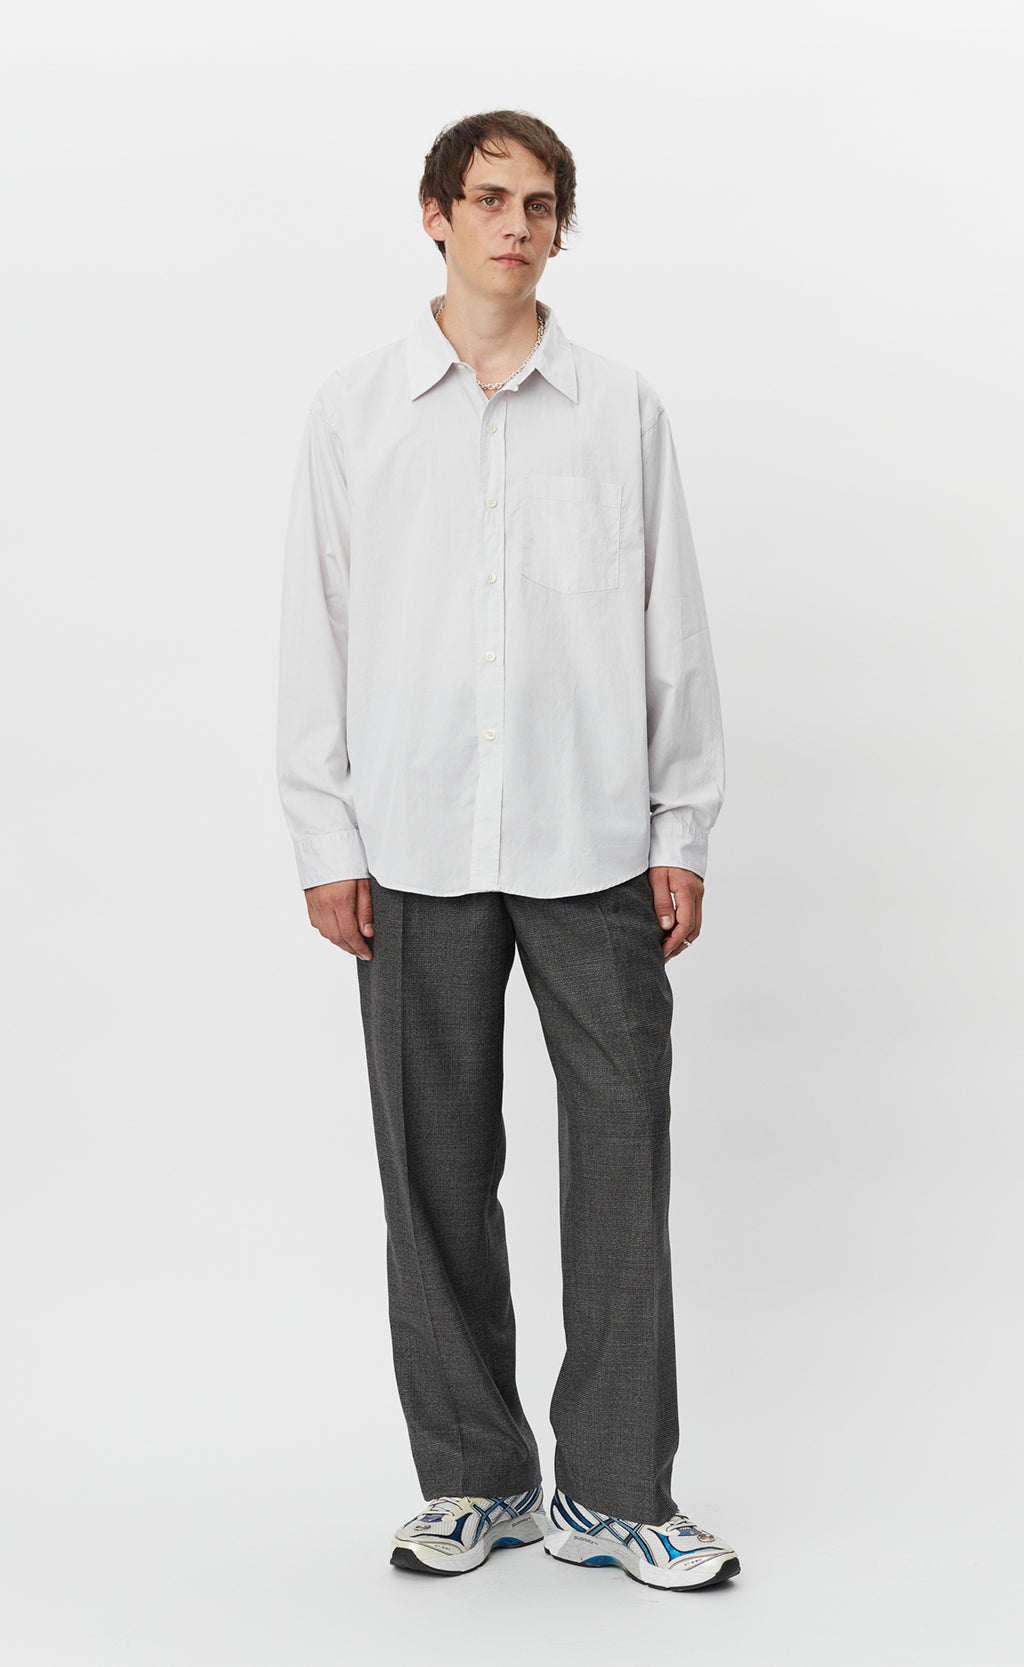 Executive Shirt - Light Grey